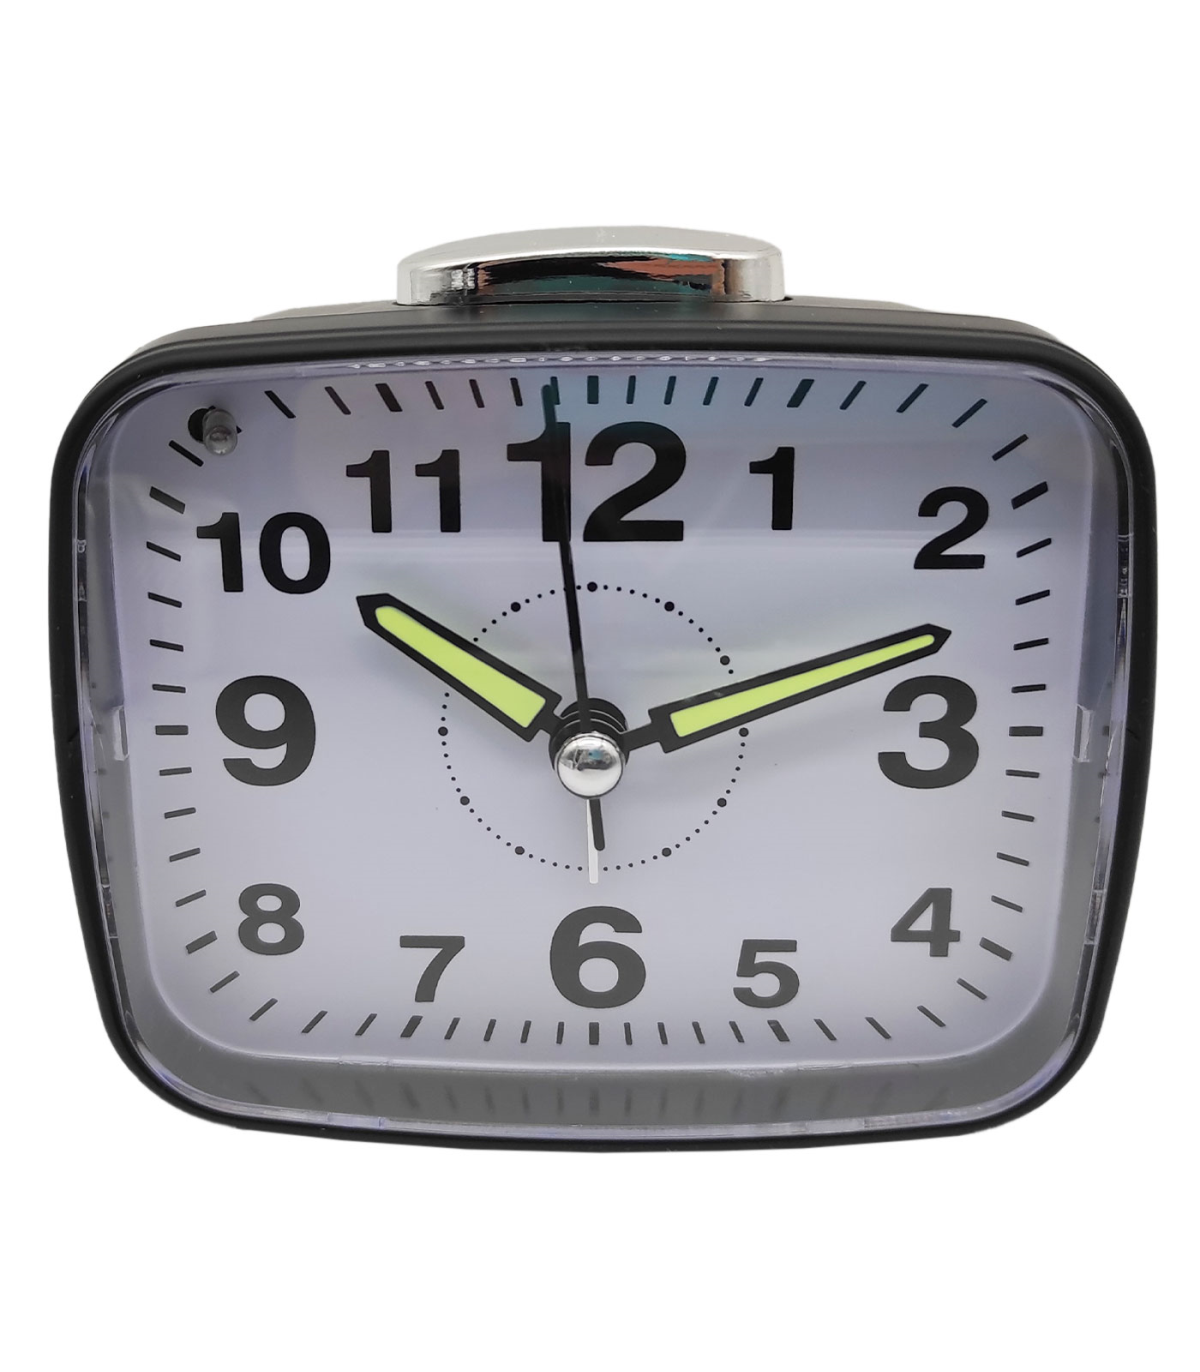 Tradineur - Reloj despertador analógico de plástico, silencioso, alarma  programable, botón de apagado, funcionamiento con 2 pila